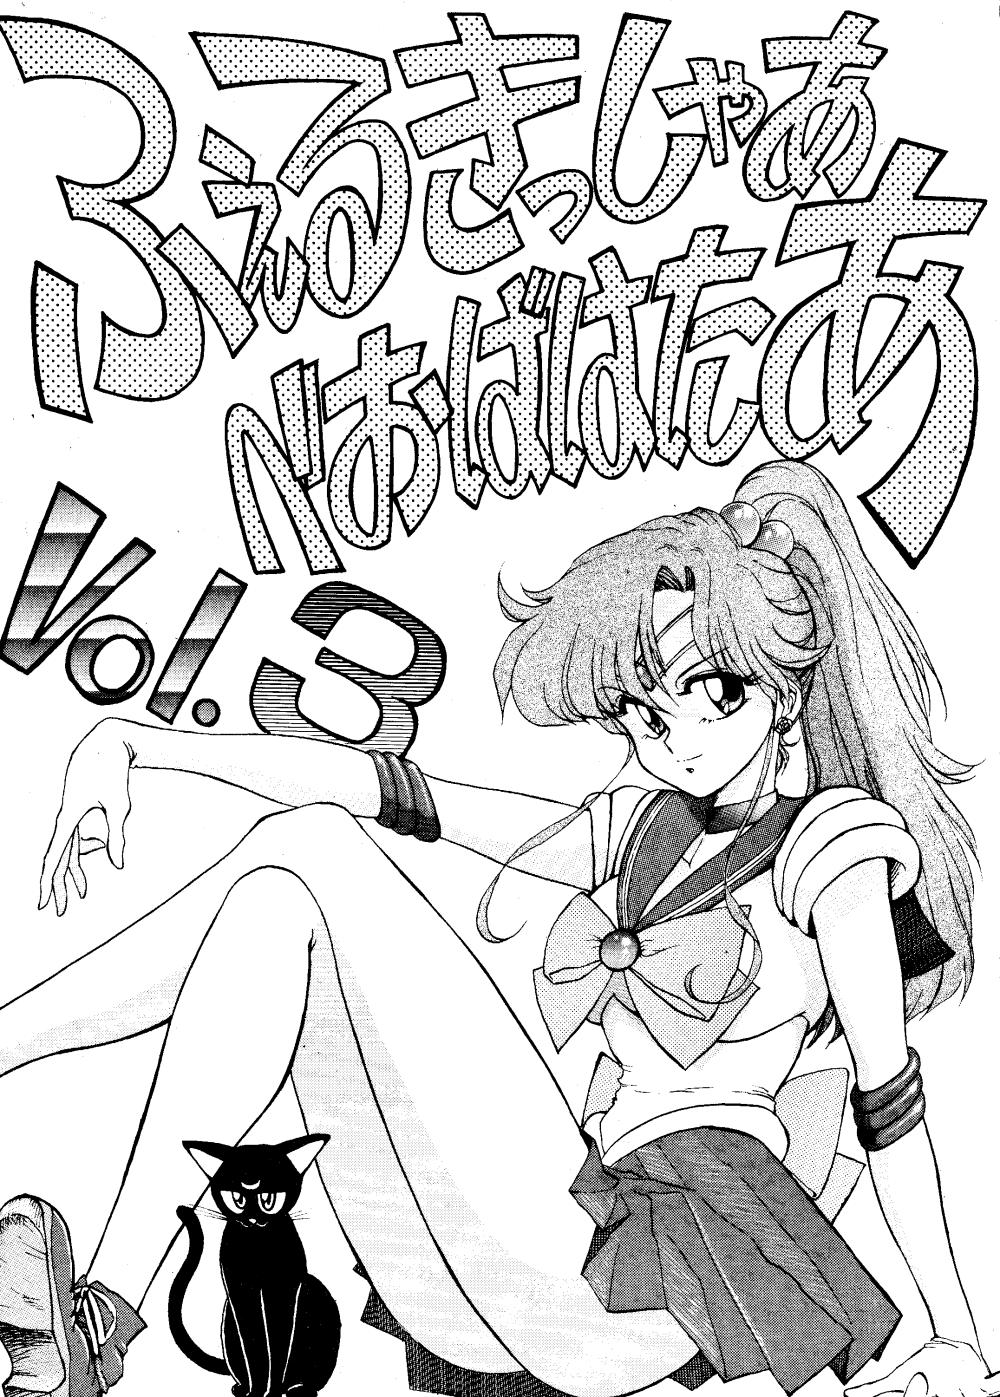 Group Völkisher Beobacher Vol. 3 Sailor Moon Ranma 12 Urusei Yatsura Deutsch 1